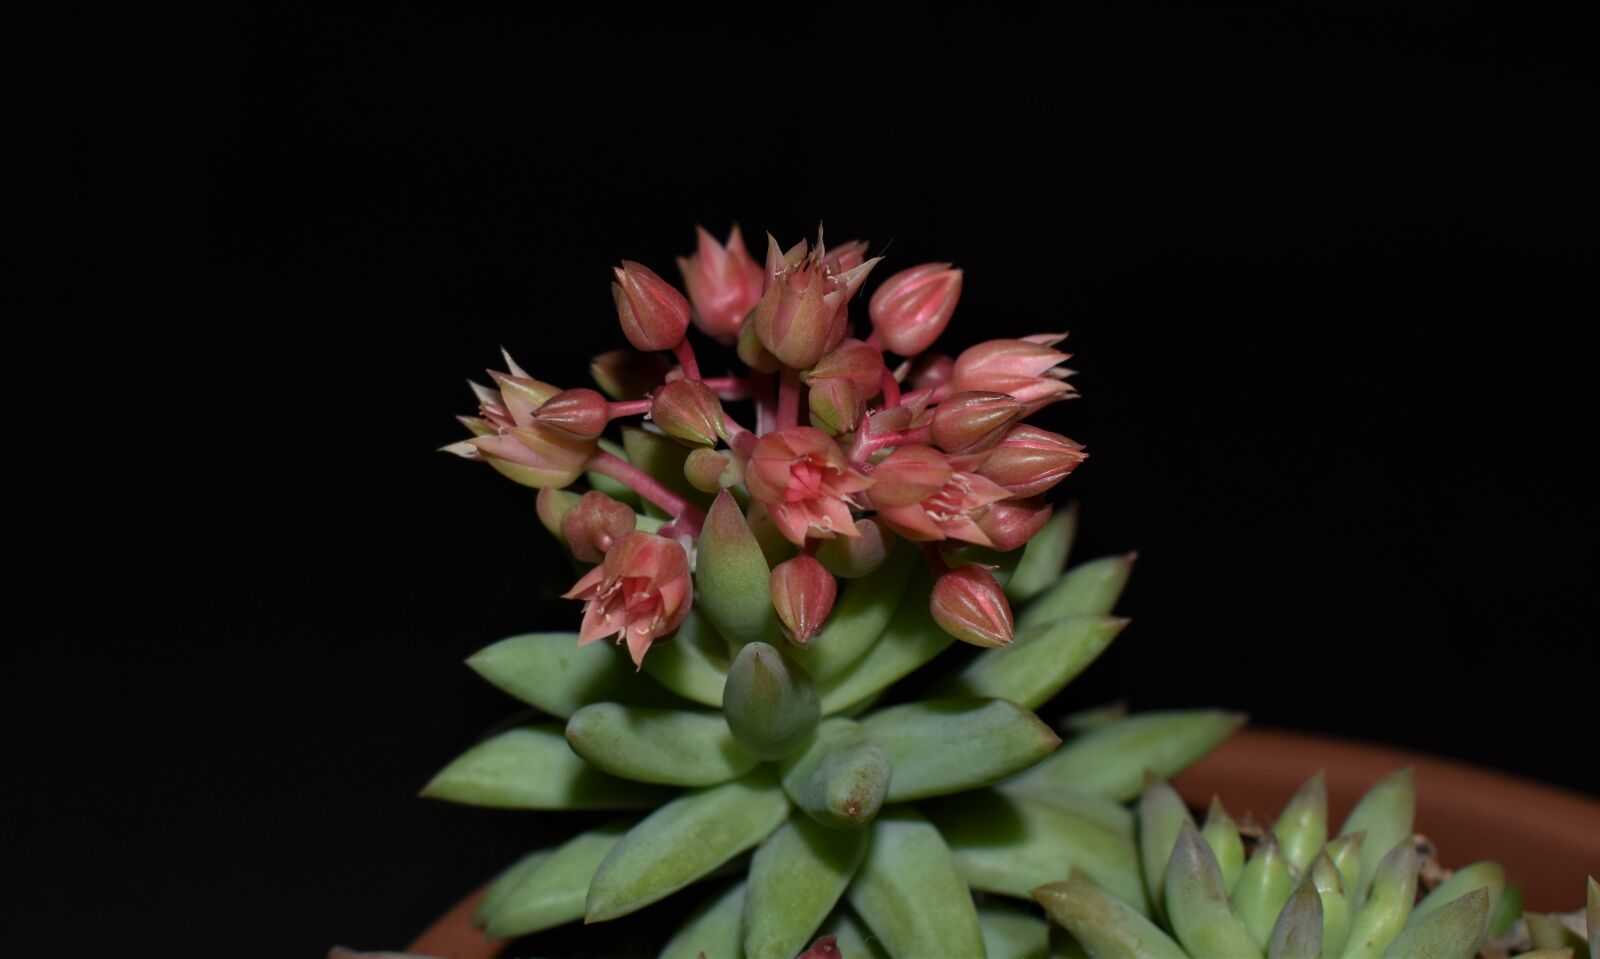 Nikon D3500 sample photo. Plant, succulent, bloom photography